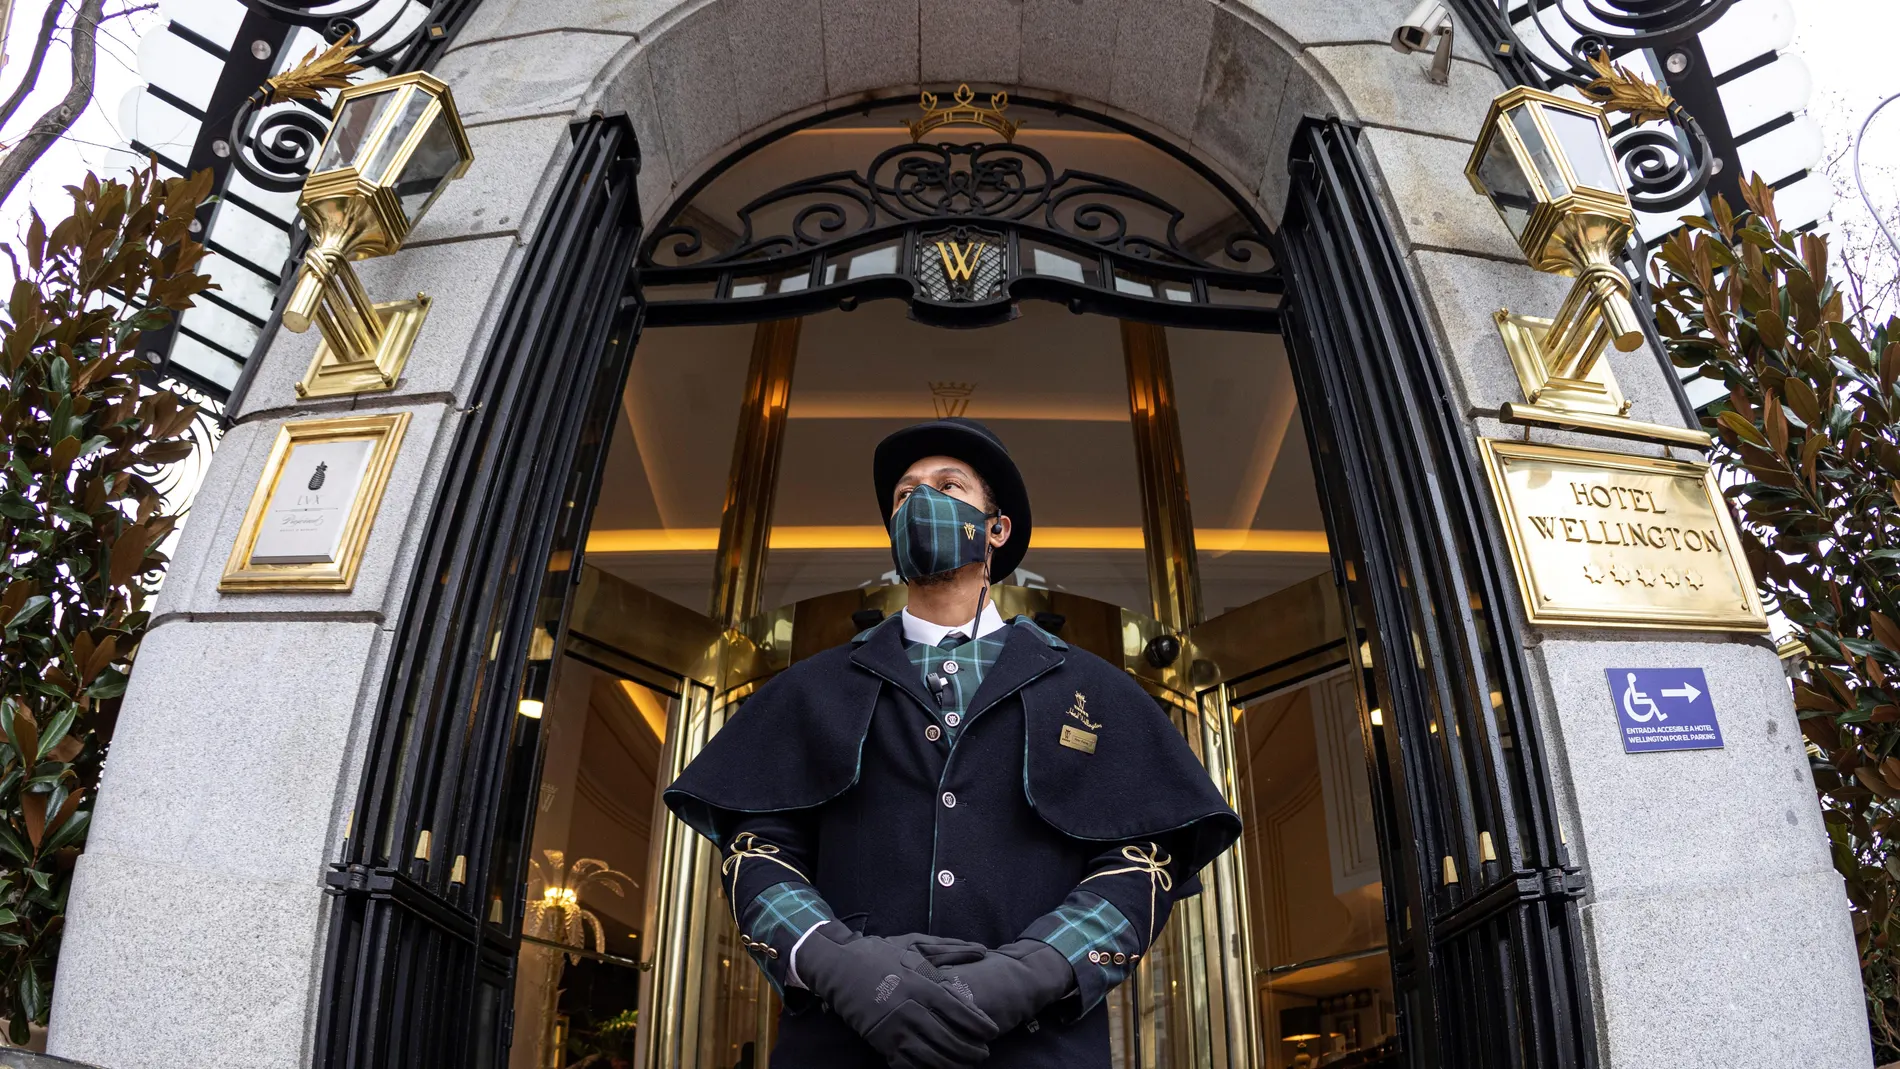 El Hotel Wellington de Madrid reabre sus puertas después de que el coronavirus obligase a su cierre durante casi un año, y tras los 6 millones de euros que se invirtieron en su renovación